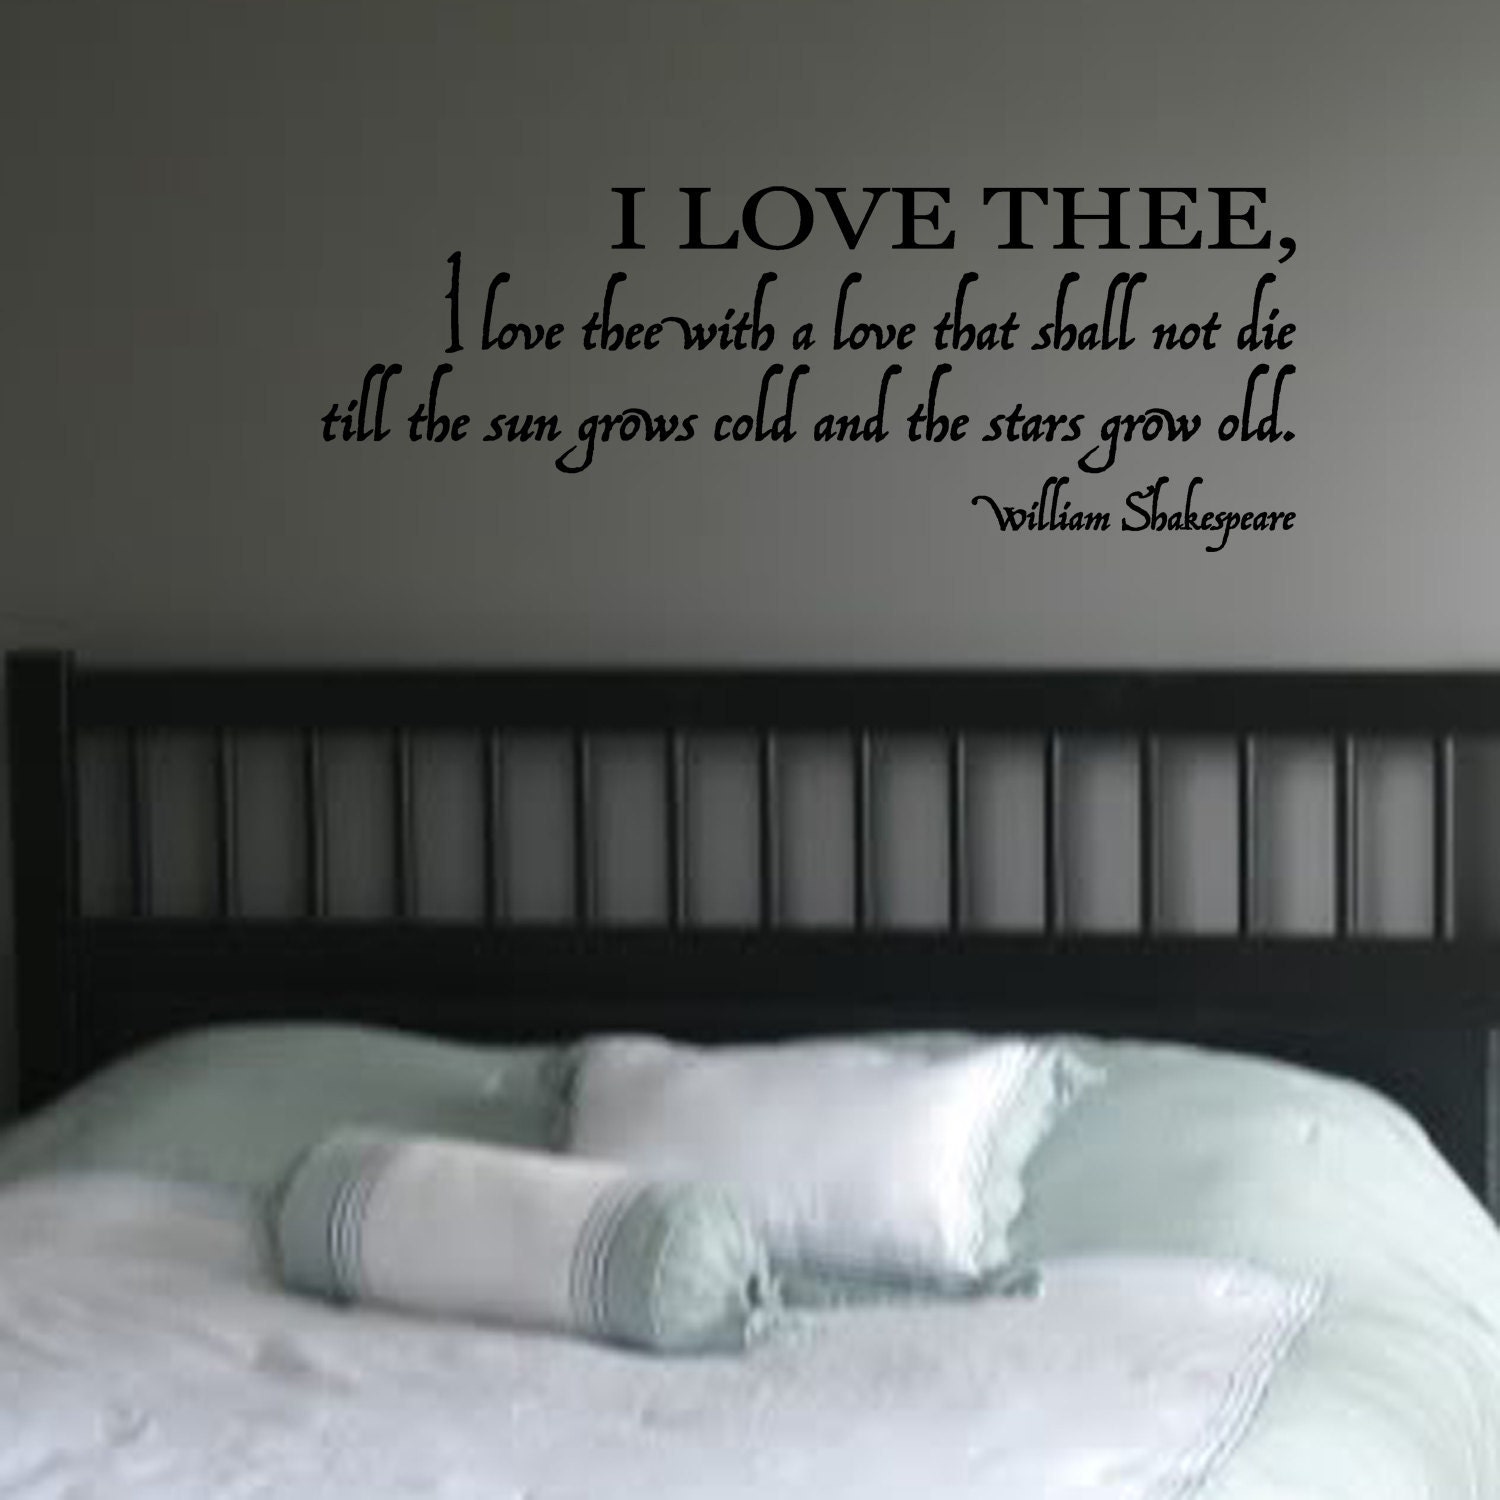 William Shakespeare Quotes About Love. QuotesGram